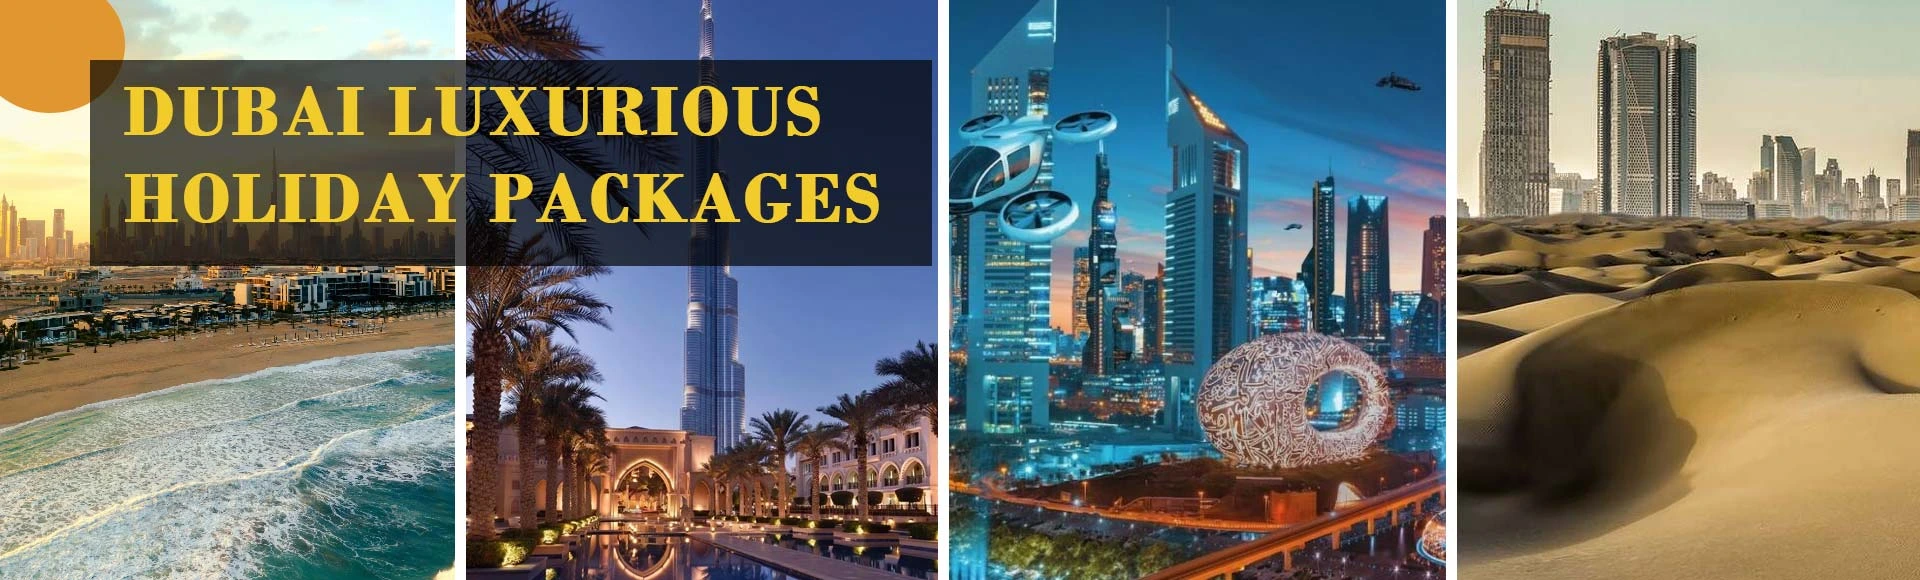 Dubai_festival_session_packages